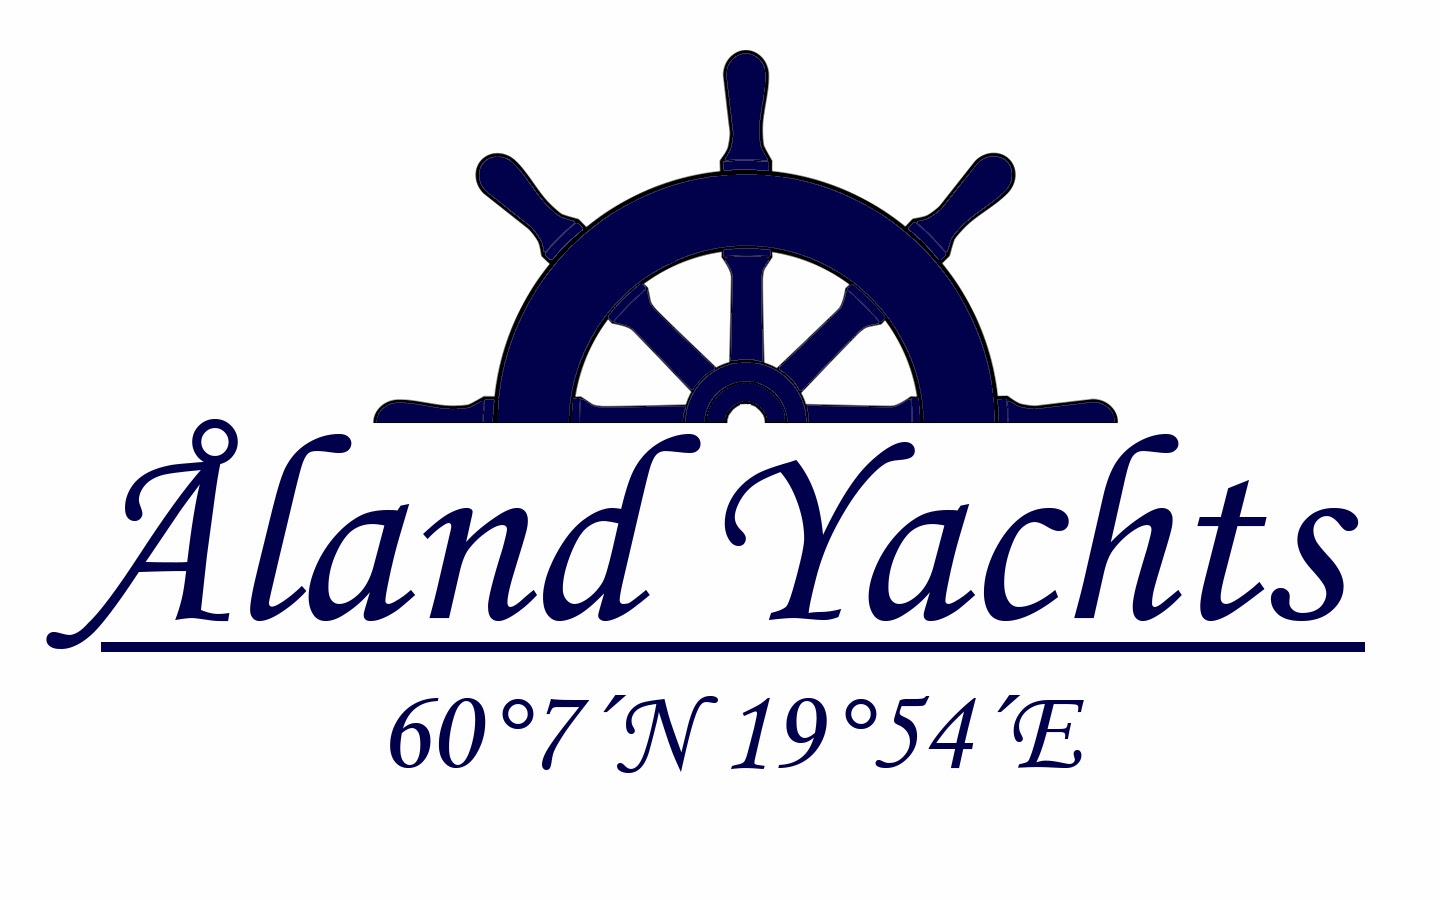 Åland Yachts